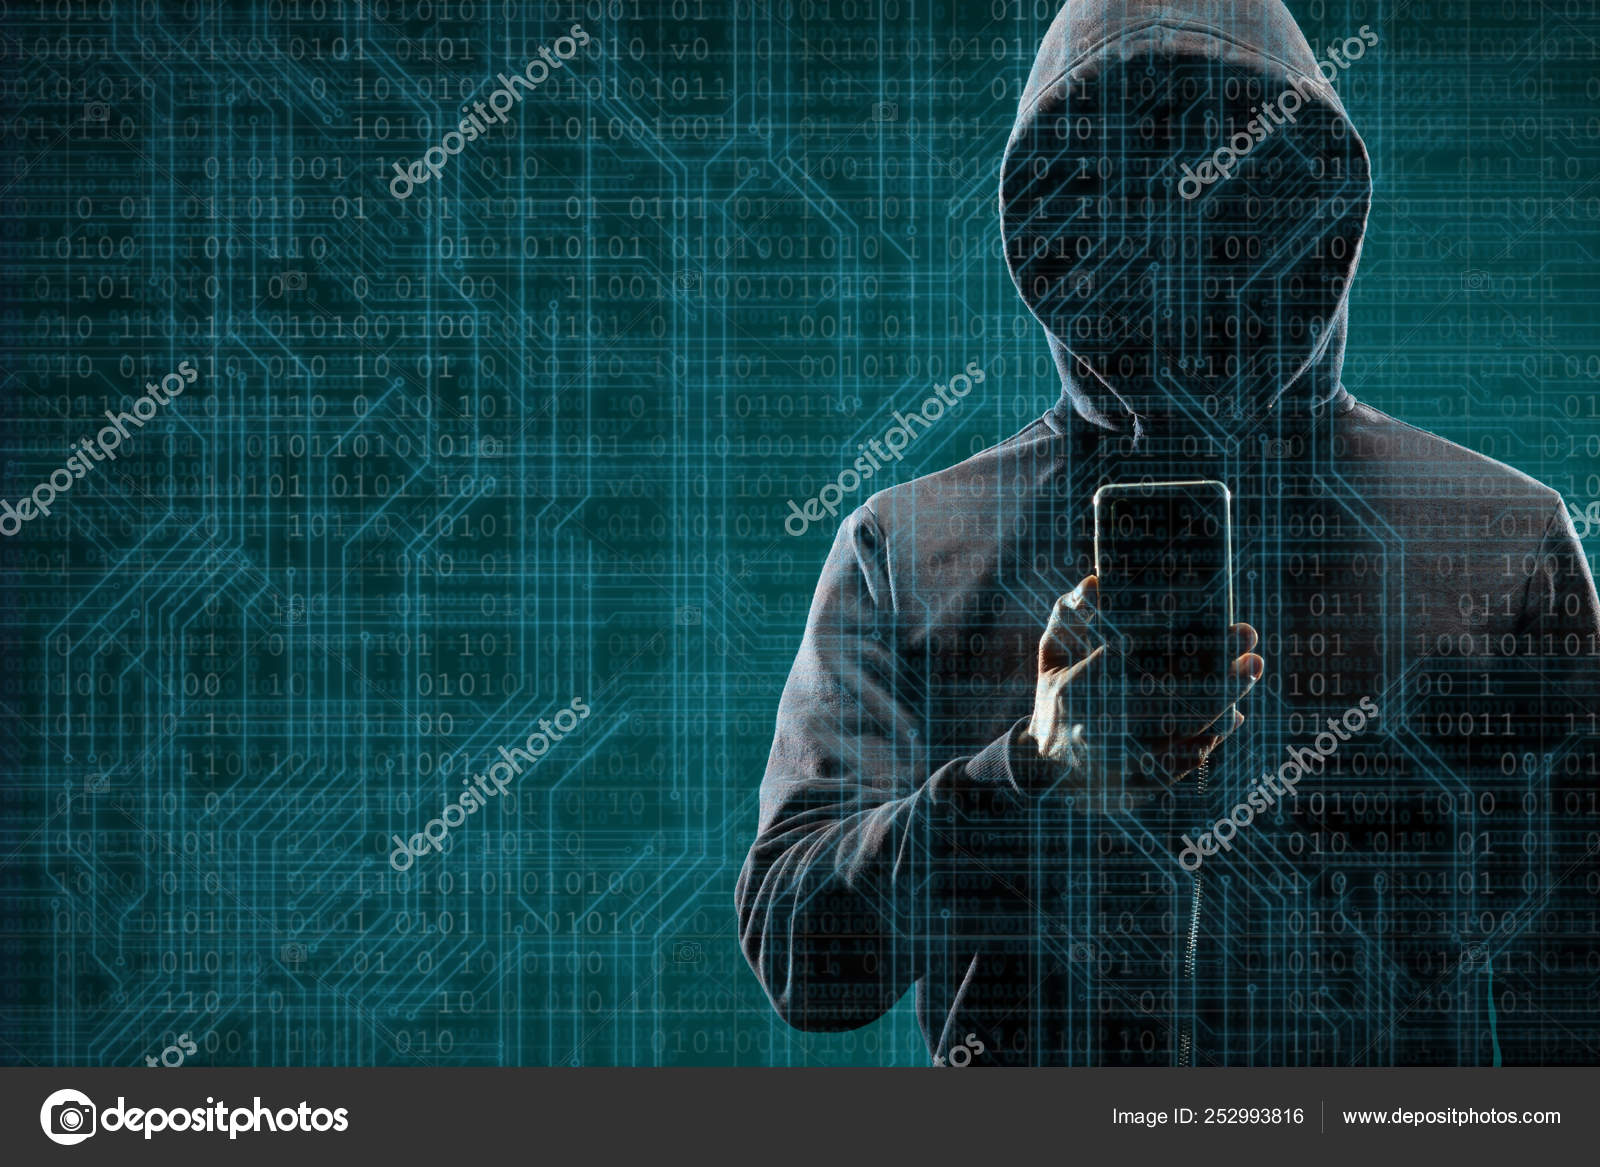 Как защититься от кражи денег, рассказал эксперт по кибербезопасности - фото 1